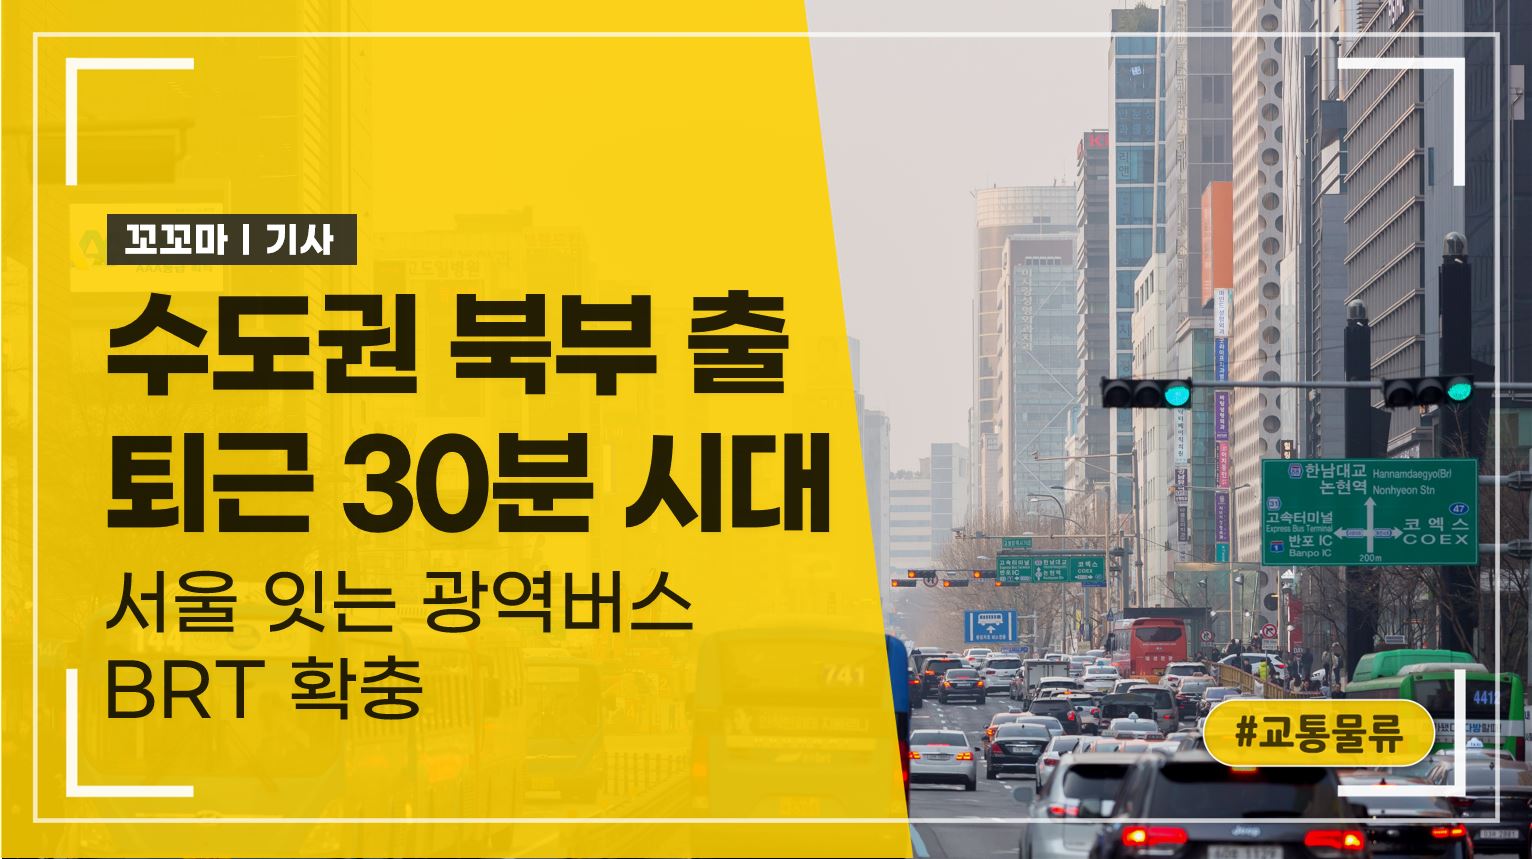 수도권 북부 출퇴근 30분 시대: 서울 잇는 광역버스 BRT 확충